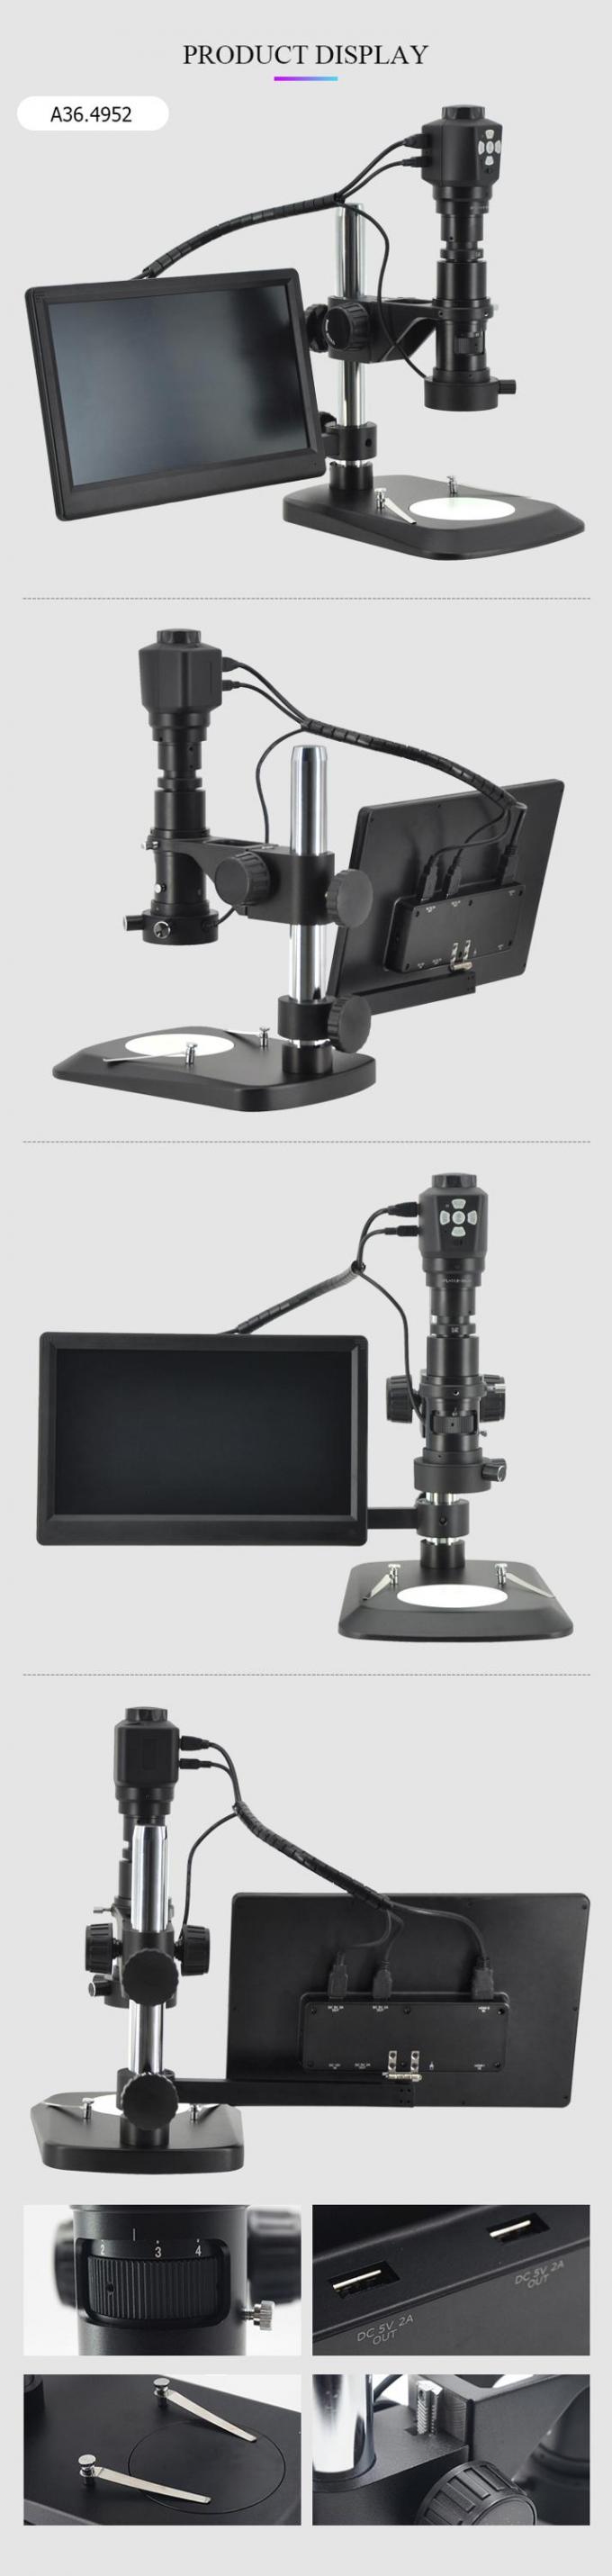 μίνι μικροσκόπιο LCD